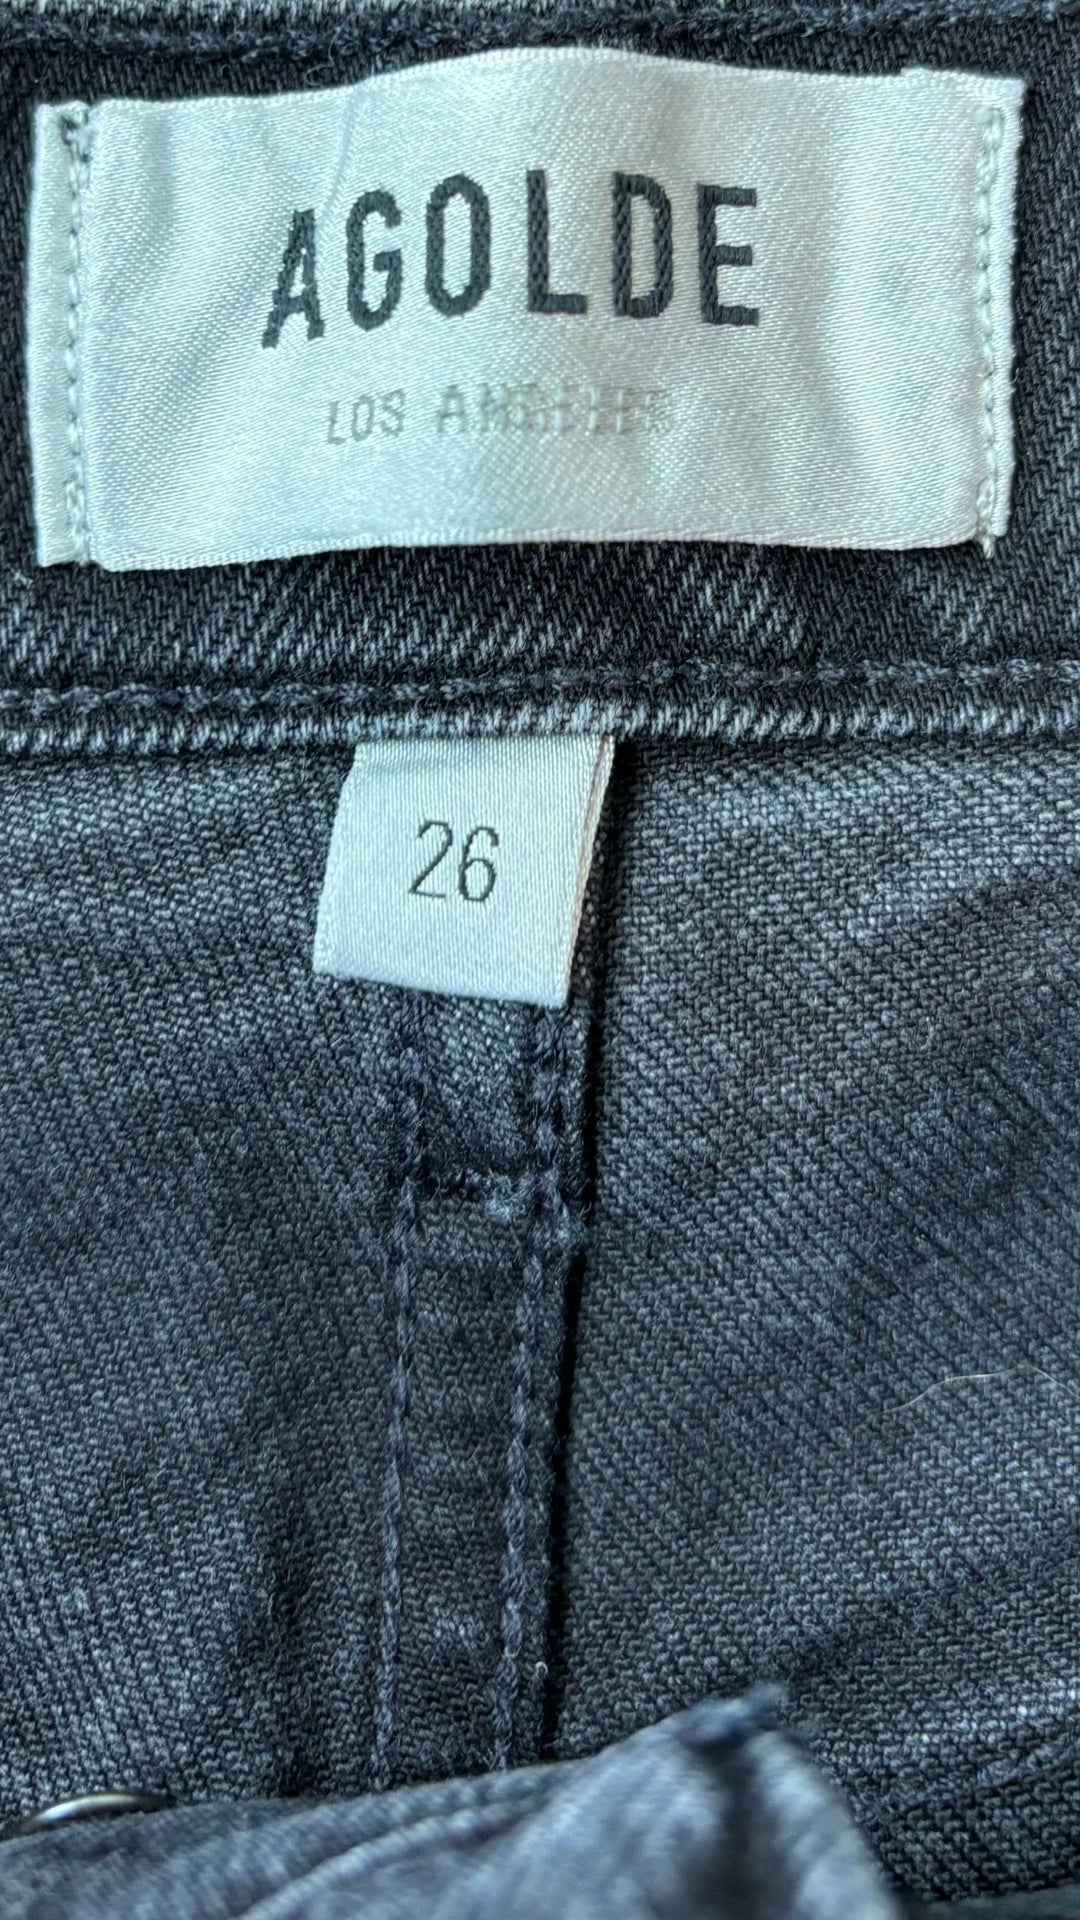 Jeans court droit taille haute Agolde, taille 26. Vue de l'étiquette de marque et taille.